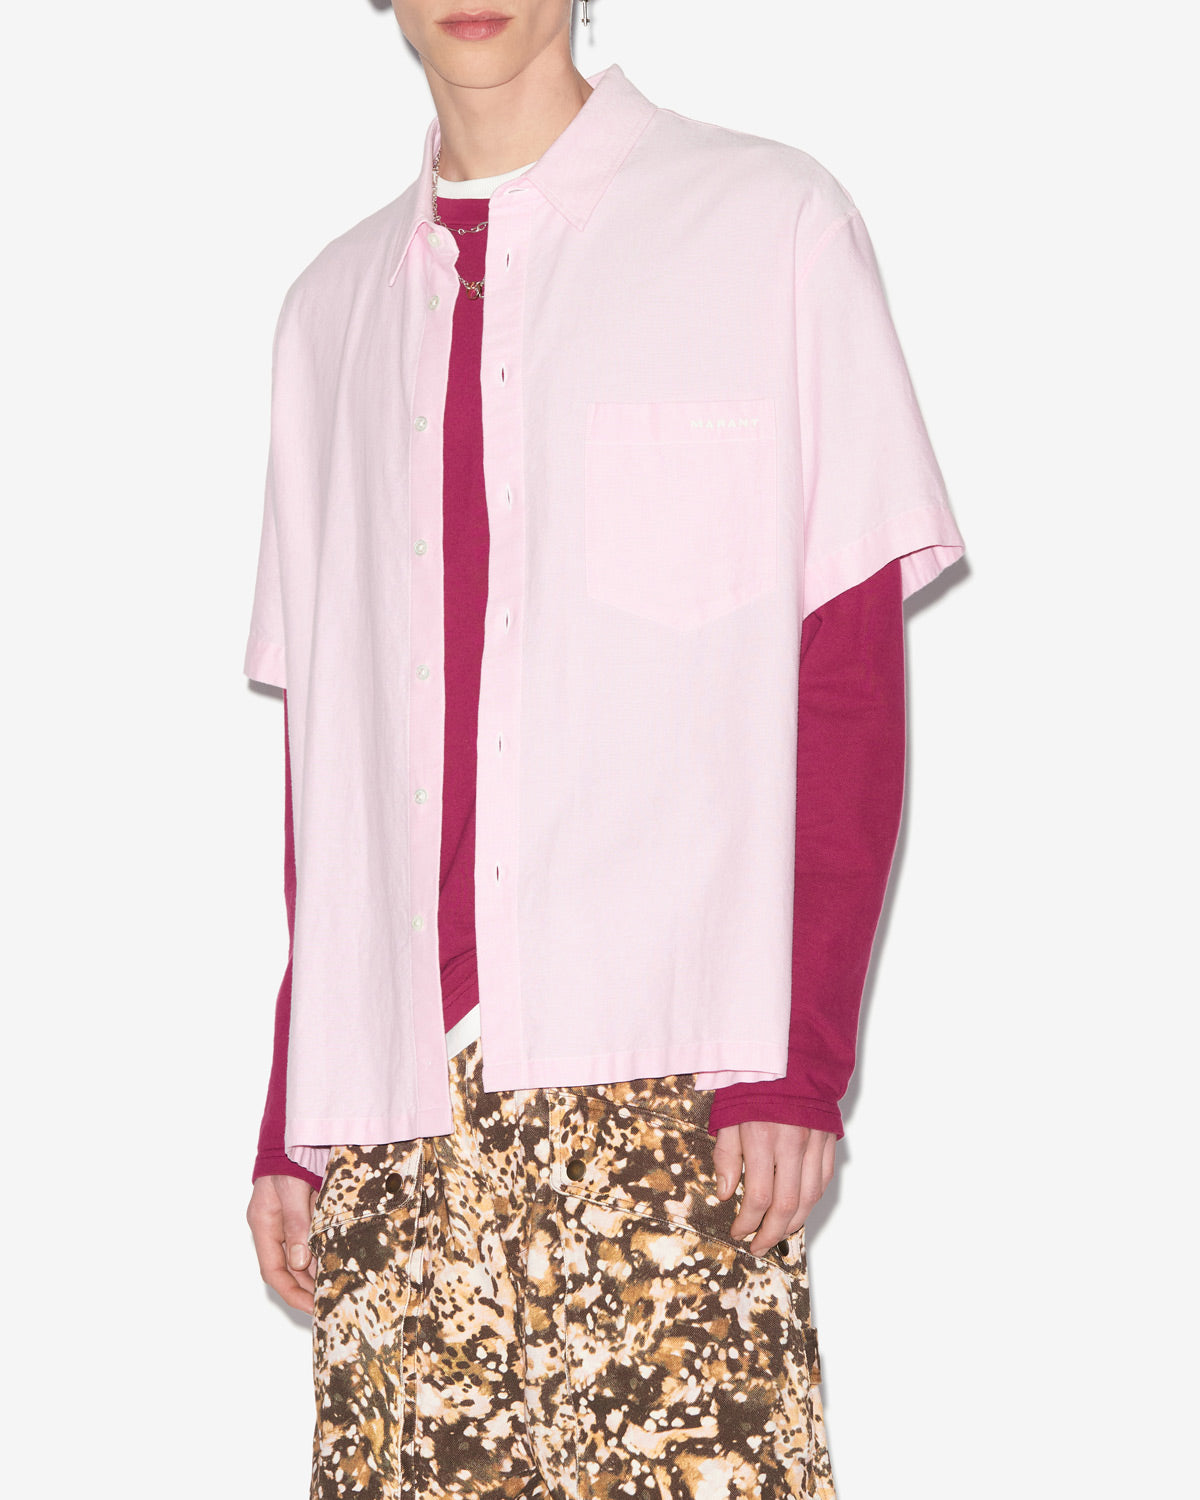 이기(iggy) 셔츠 Man Light pink 5